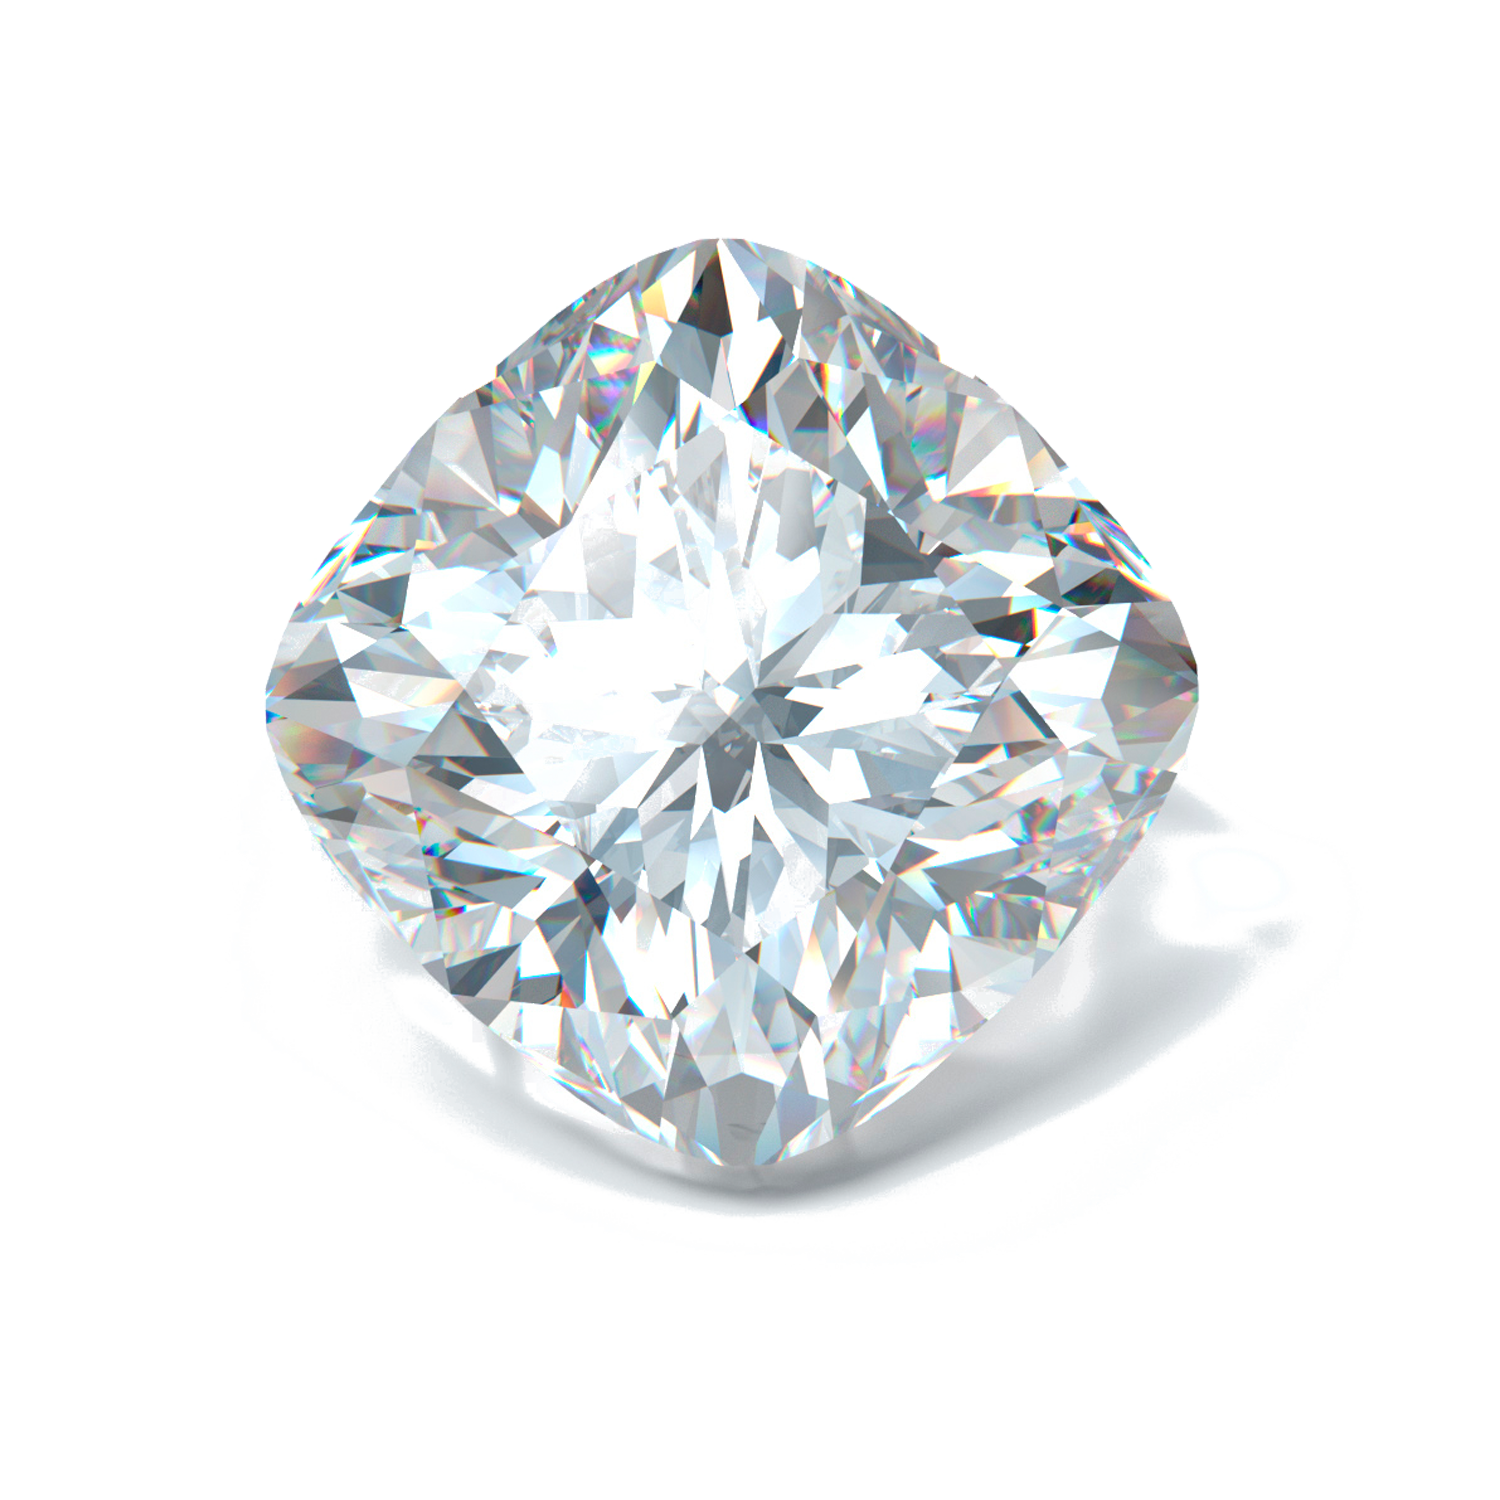 Бриллианты hpht first class diamonds. Форма огранки бриллианта Радиант.